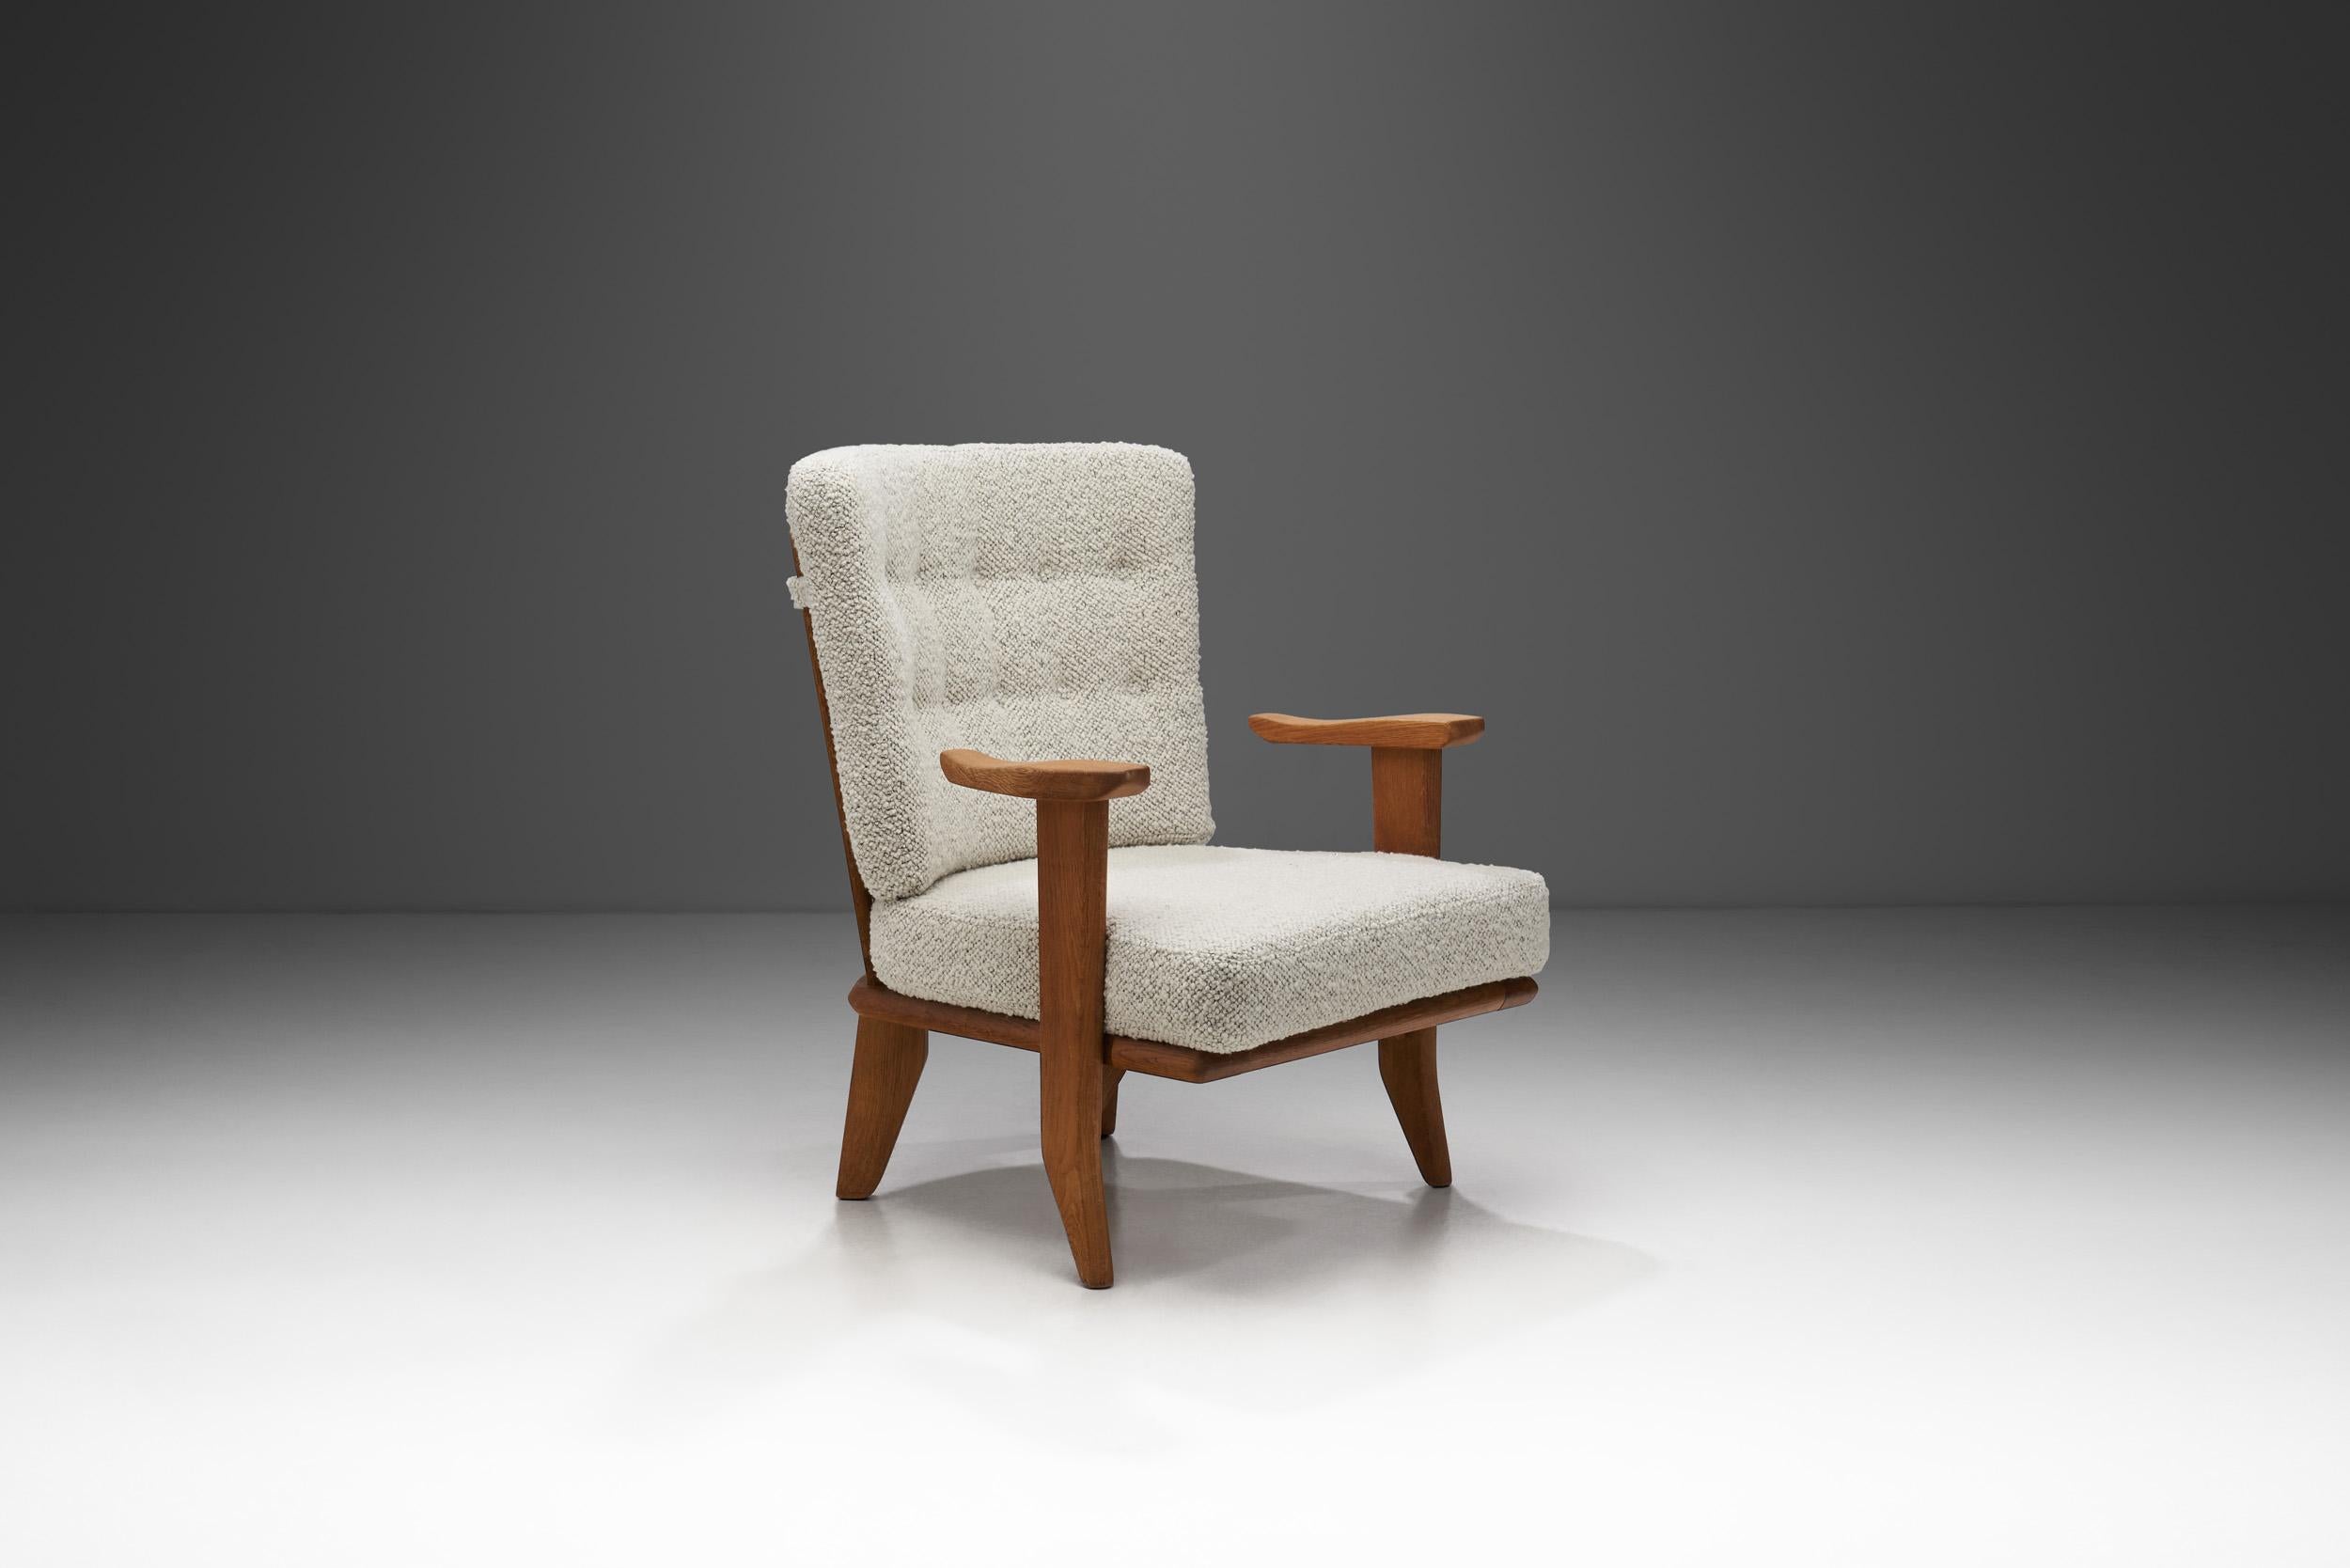 French Guillerme et Chambron Sculpted Oak Lounge Chair for Votre Maison, France 1950s